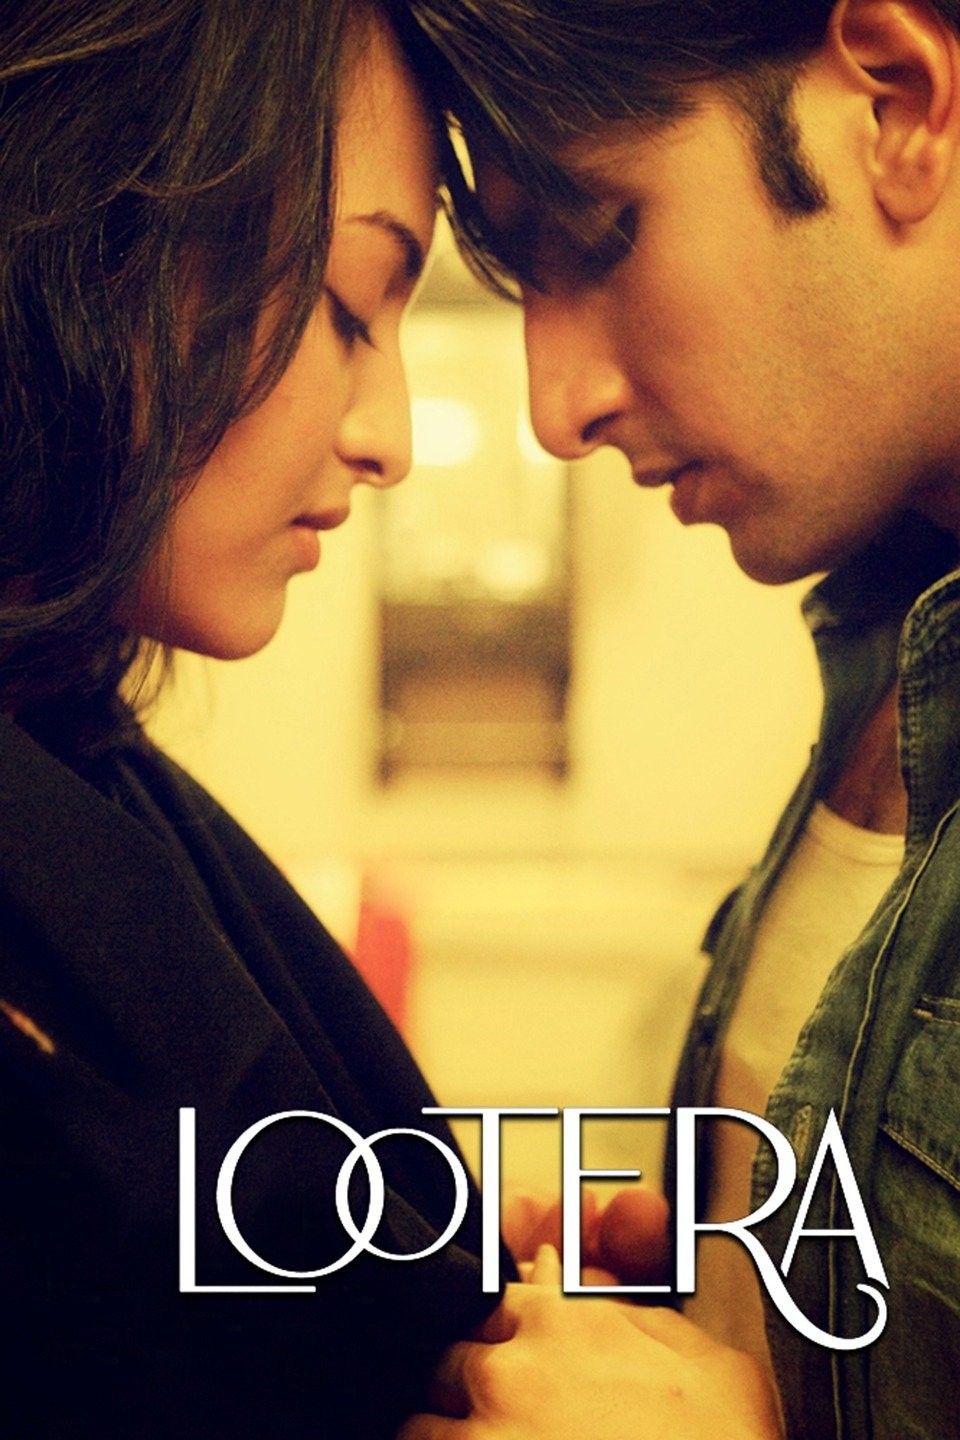 Lootera (2013) Hindi HDRip download full movie